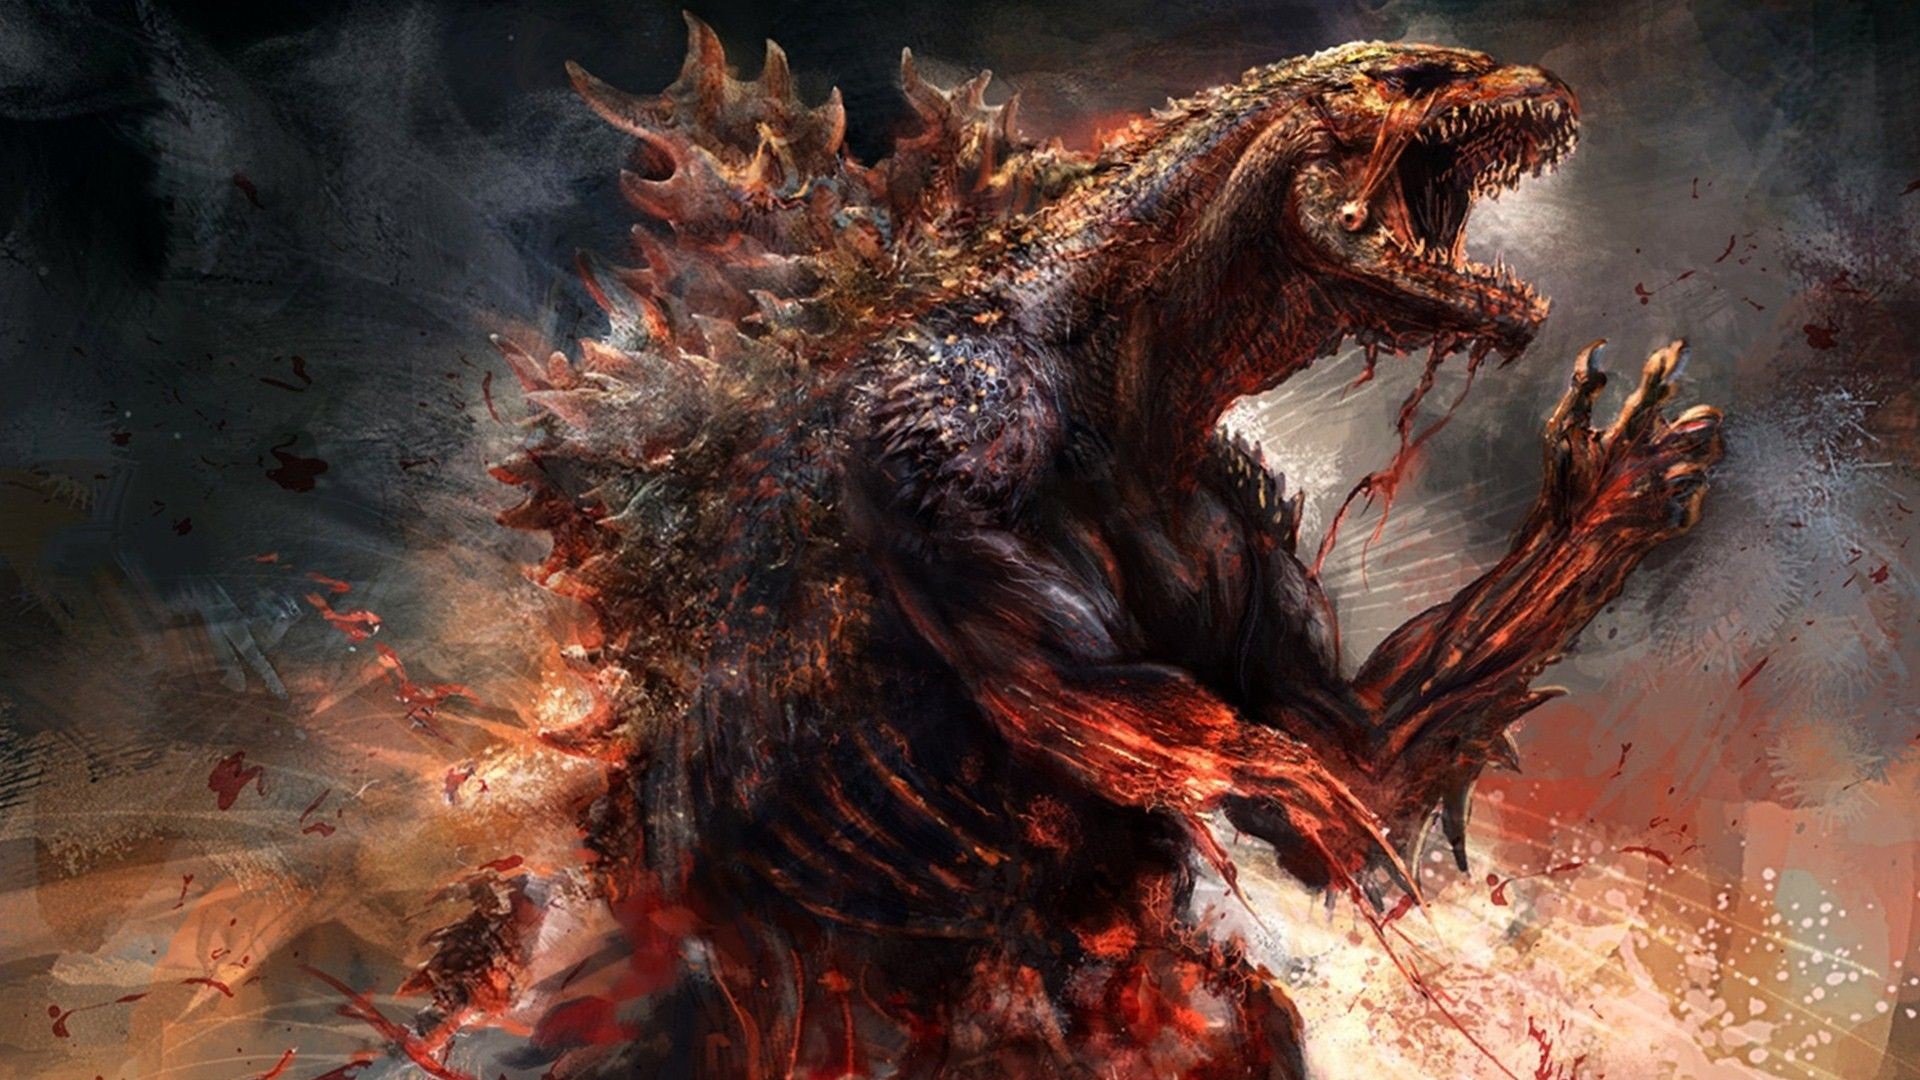 Burning Godzillas Power 4K UHD  YouTube